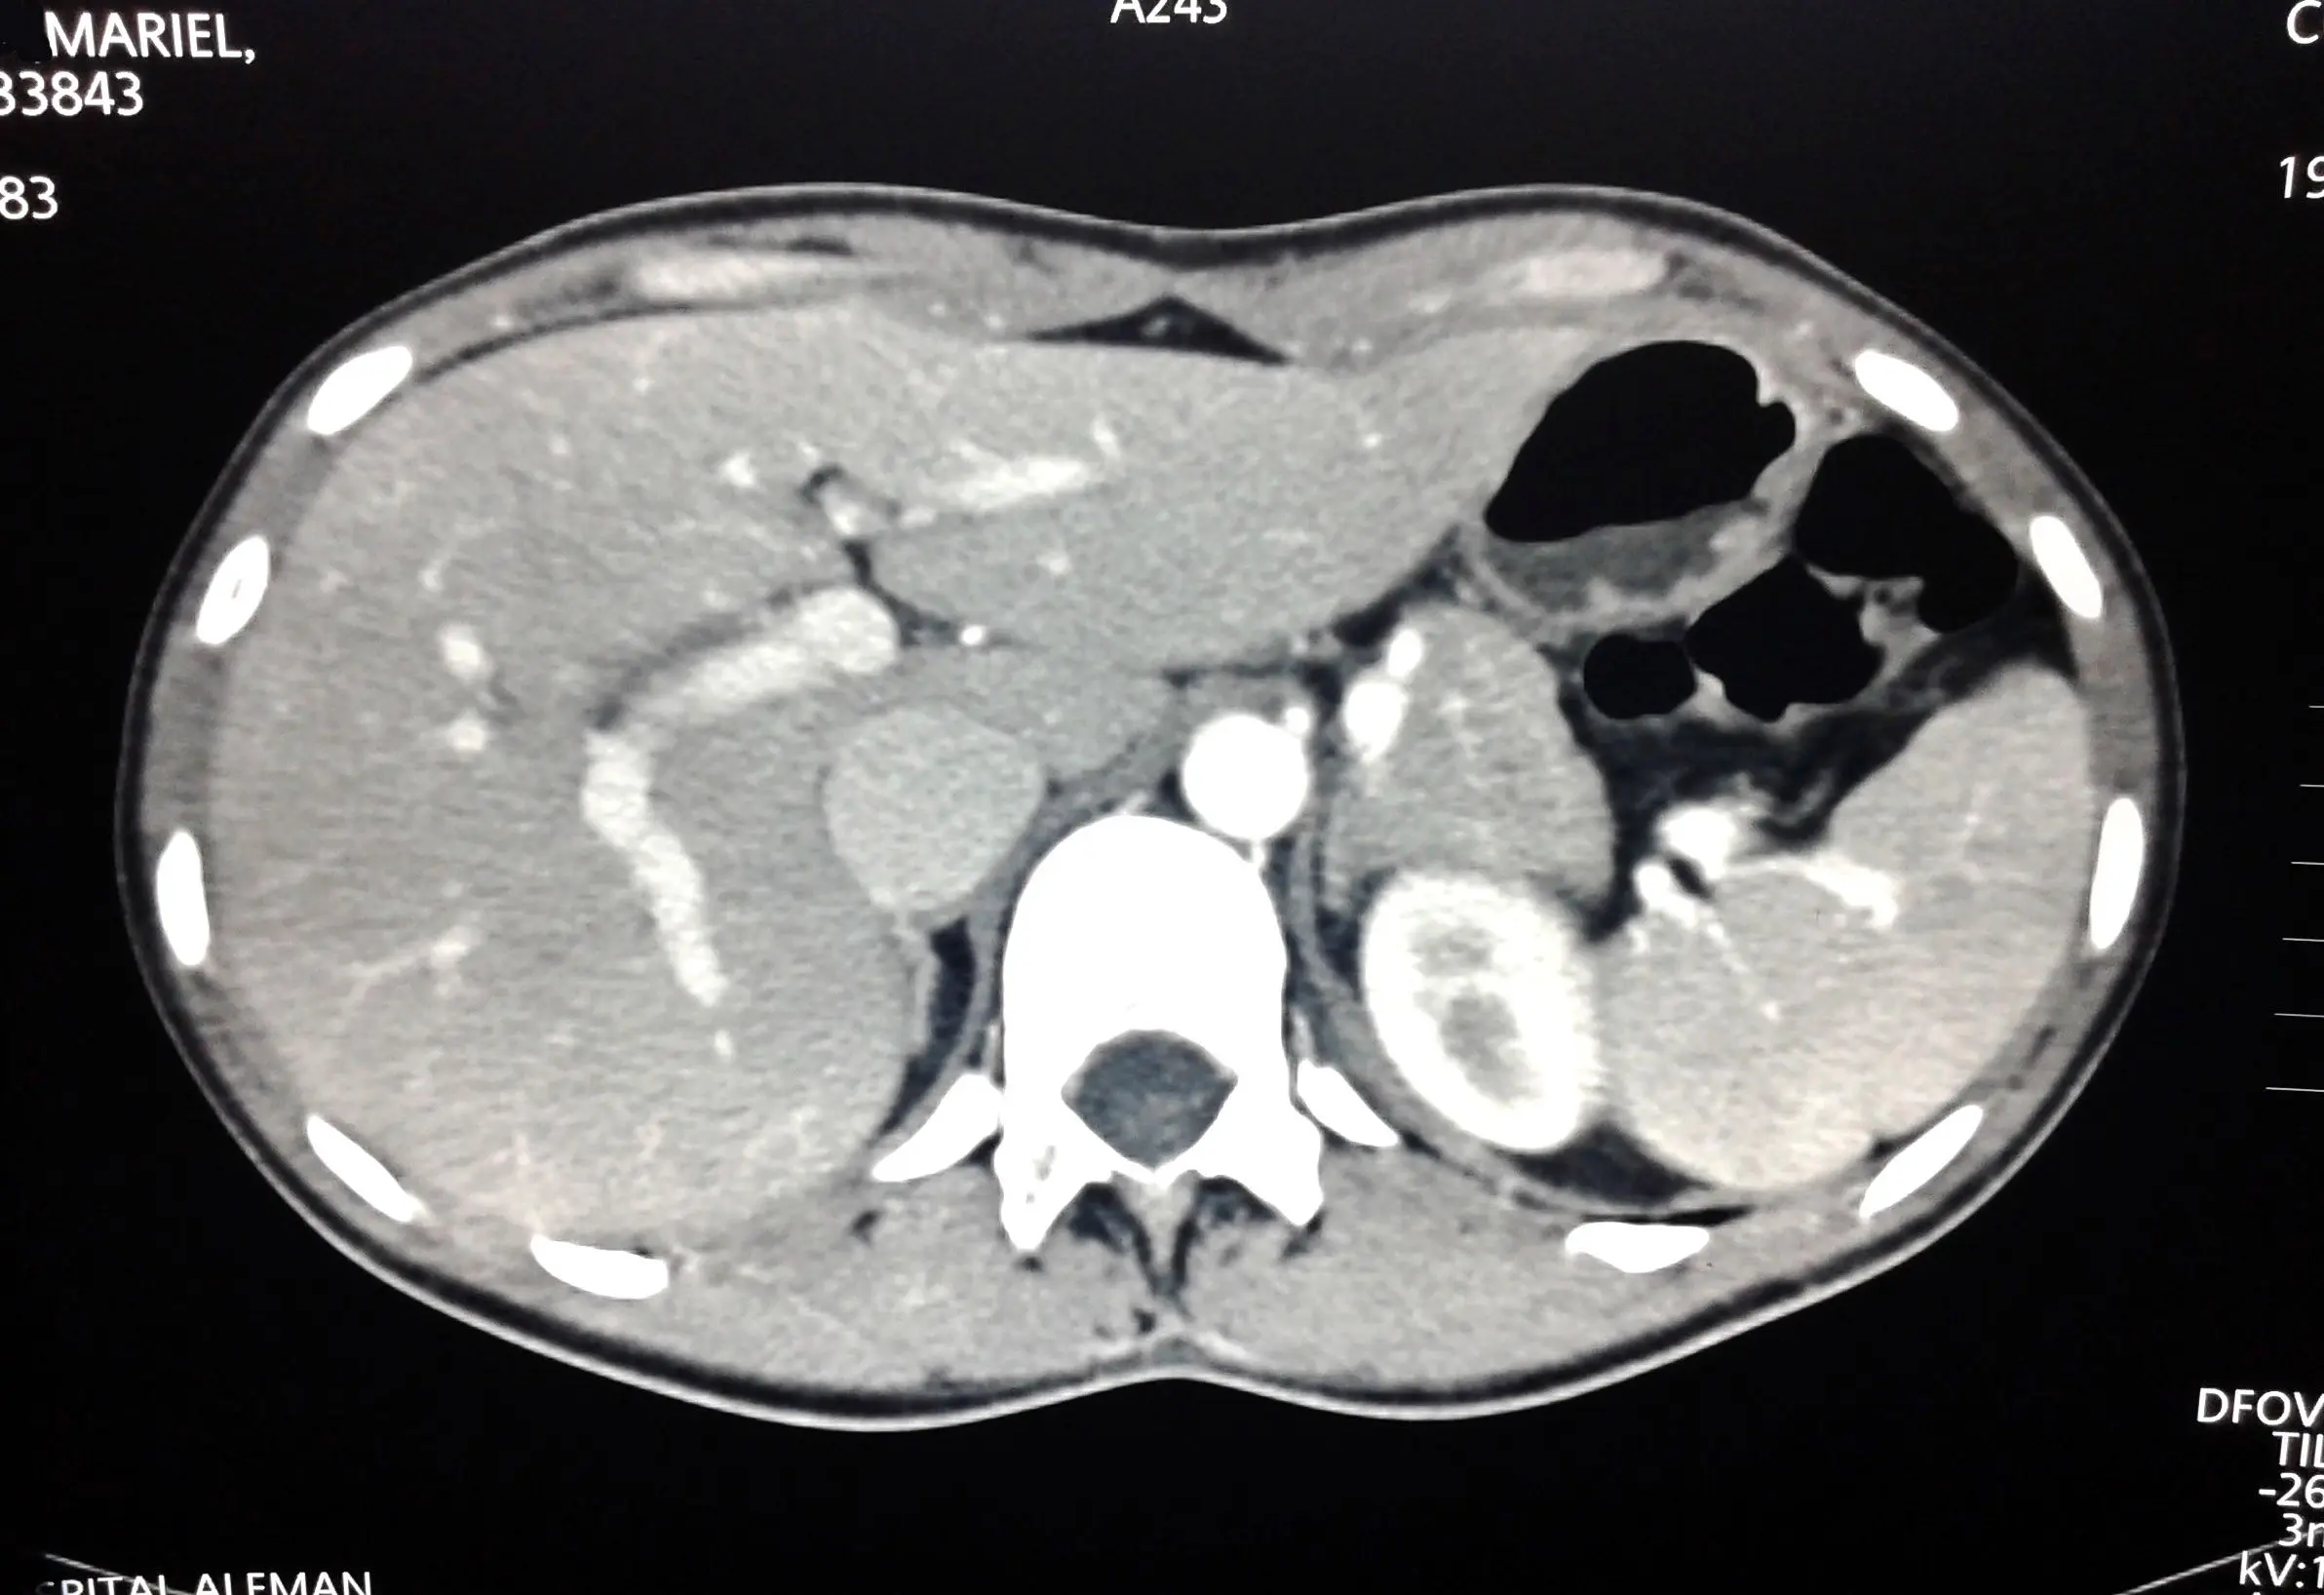 tomografia de abdomen completa auditoria - Qué fases existen en el TC abdominal